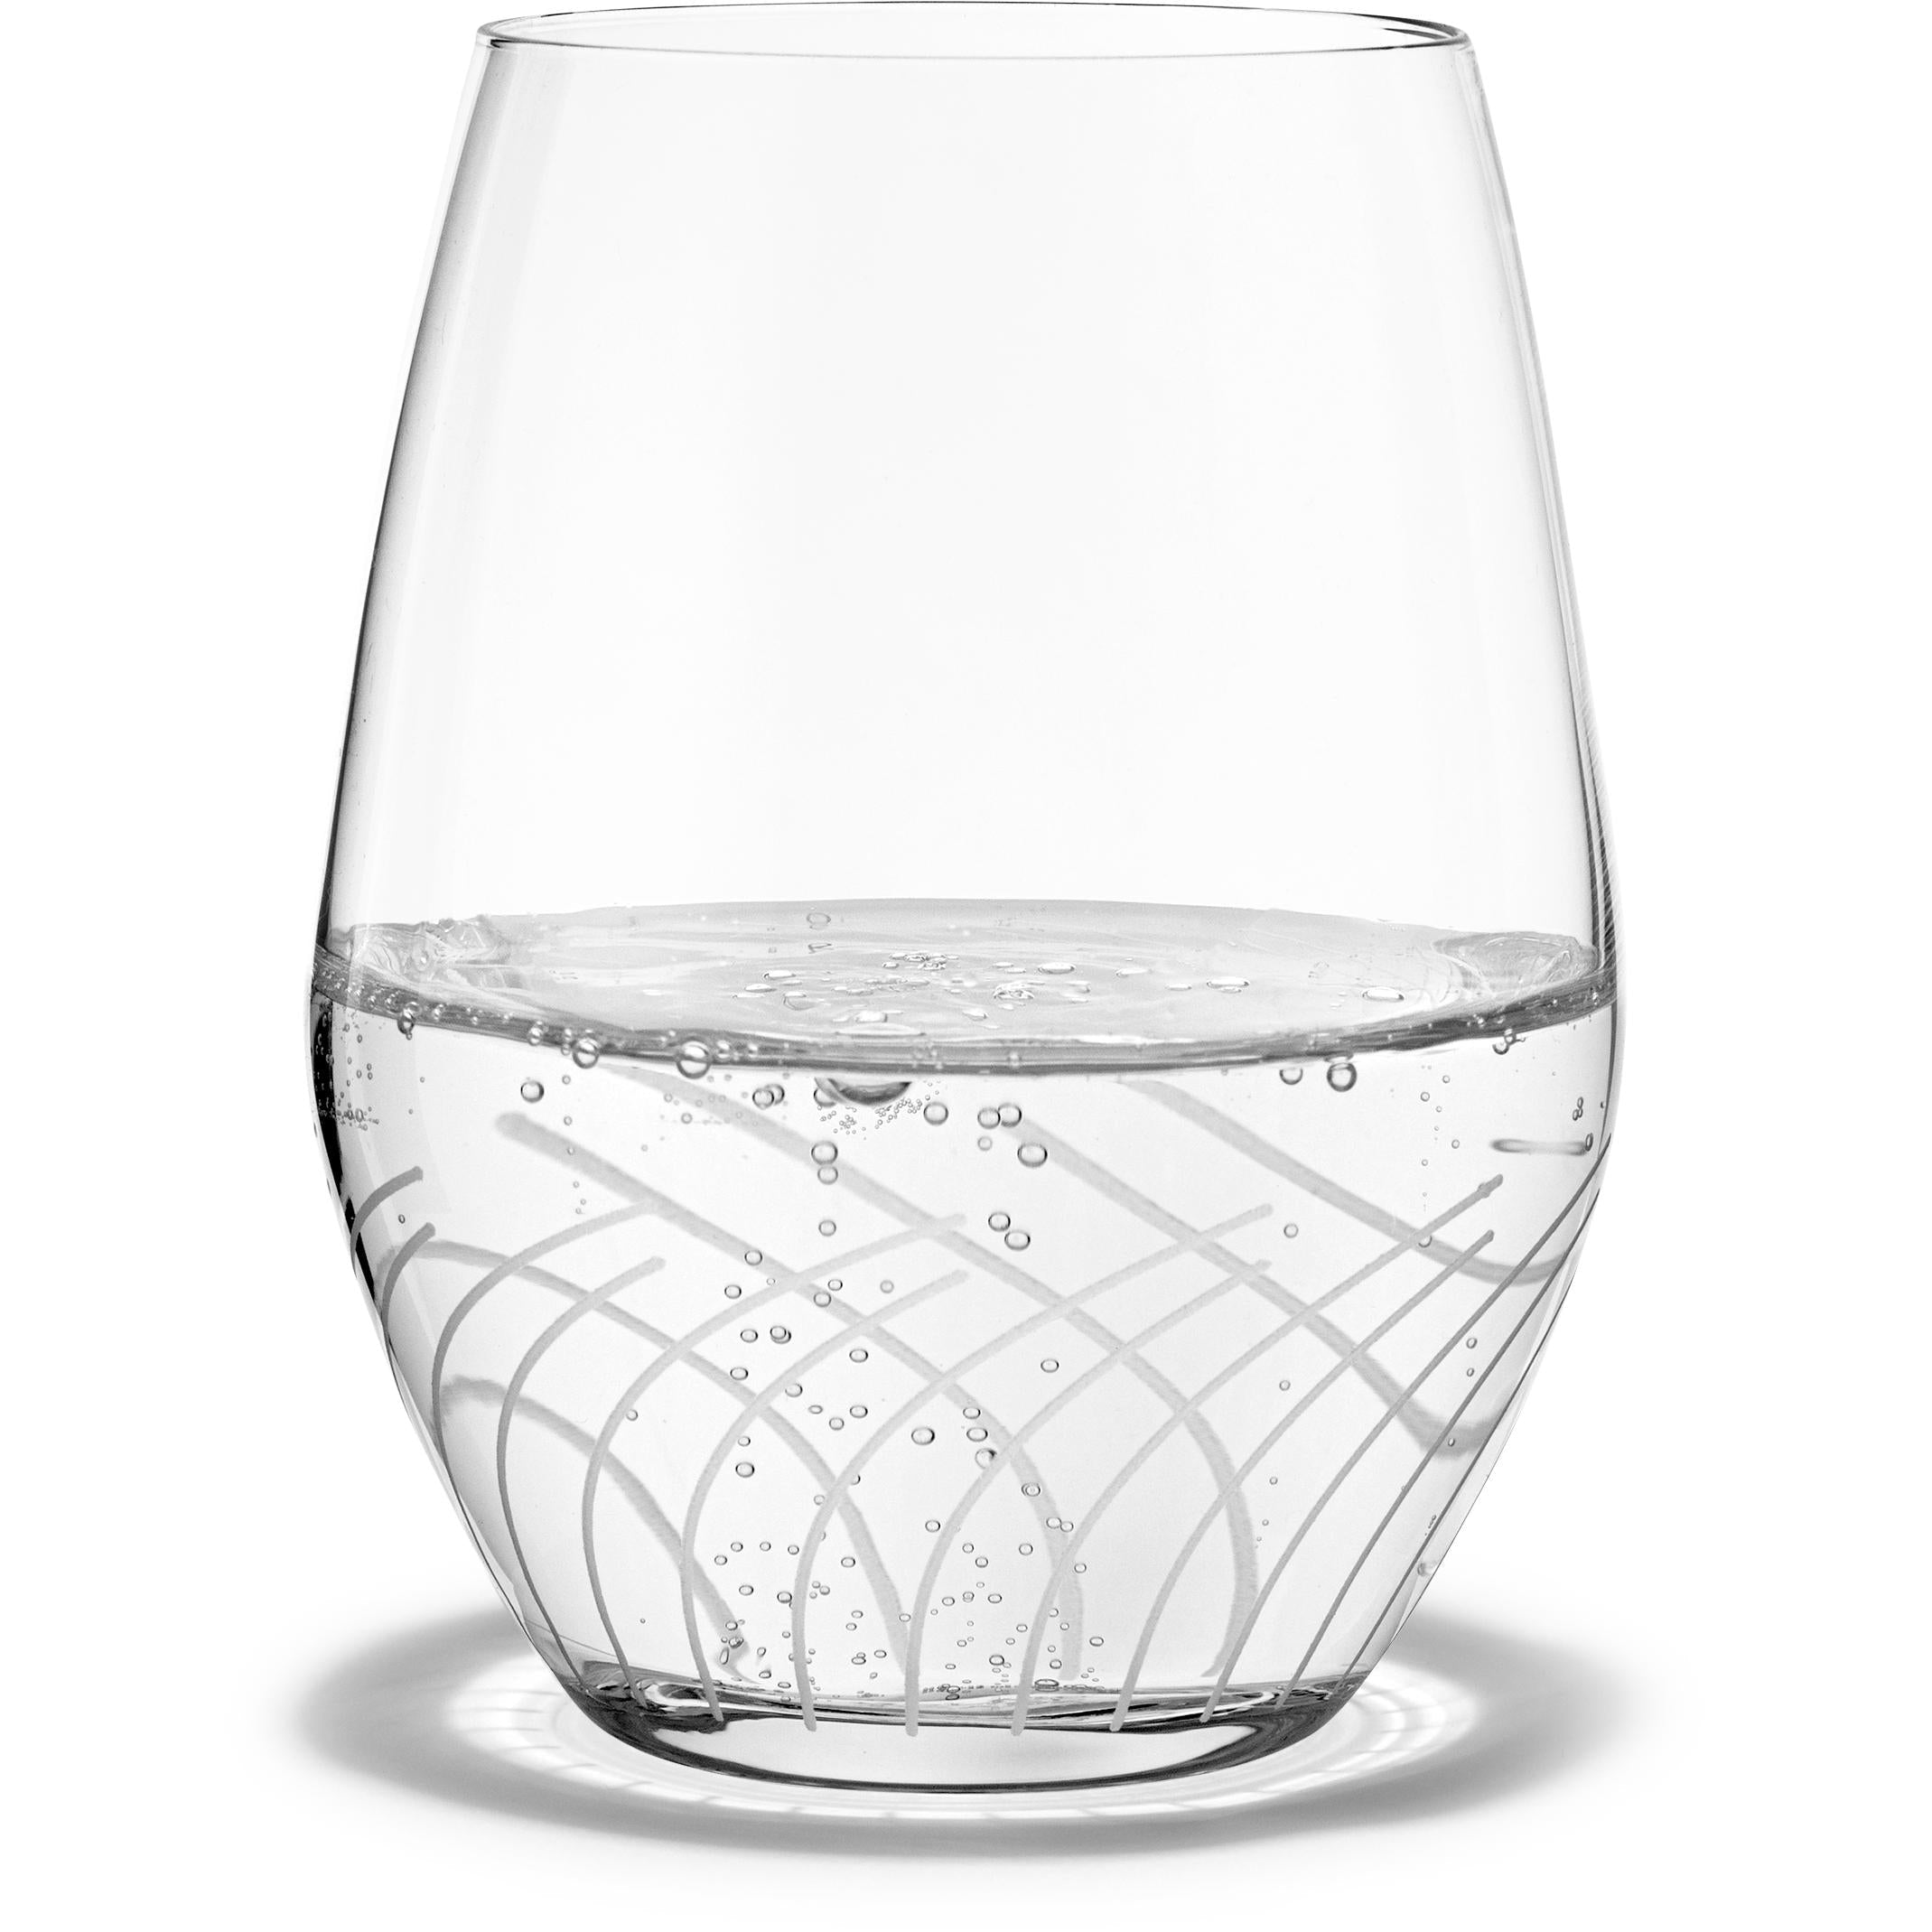 Holmegaard Cabernet -lijnen Waterglas, 2 pc's.